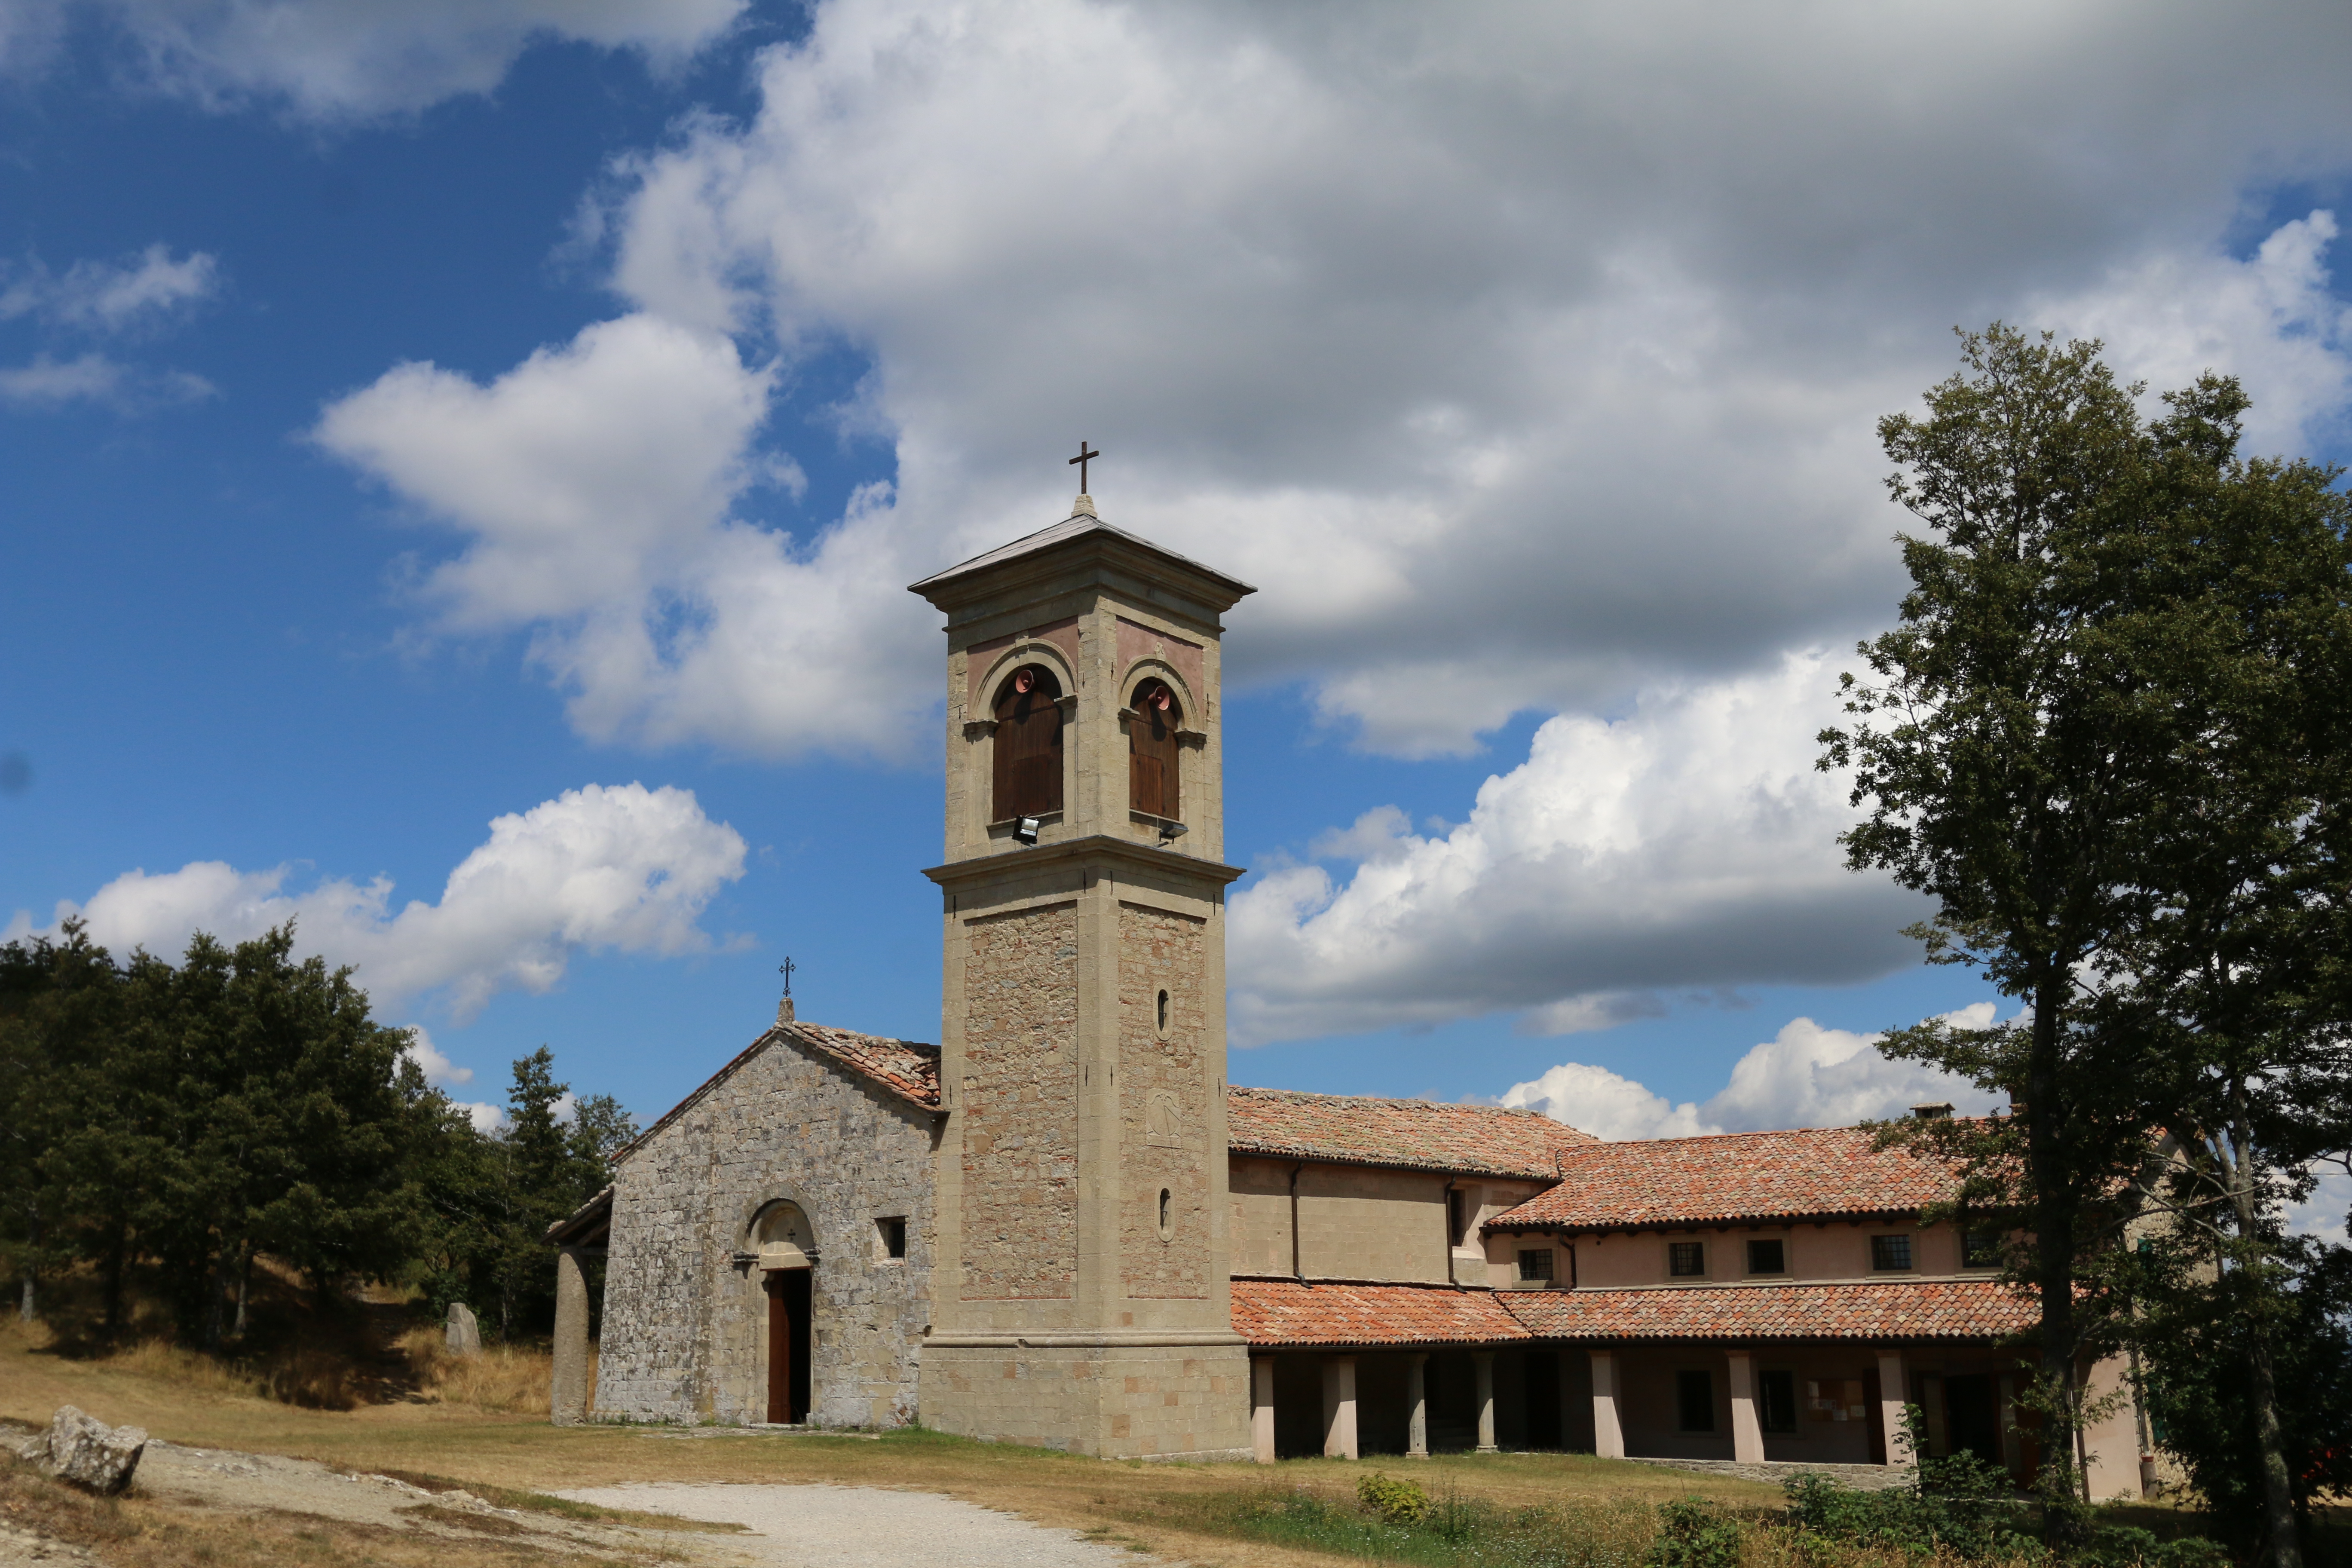 photo: https://upload.wikimedia.org/wikipedia/commons/f/fe/Santuario_della_Beata_Vergine_di_Montovolo.jpg